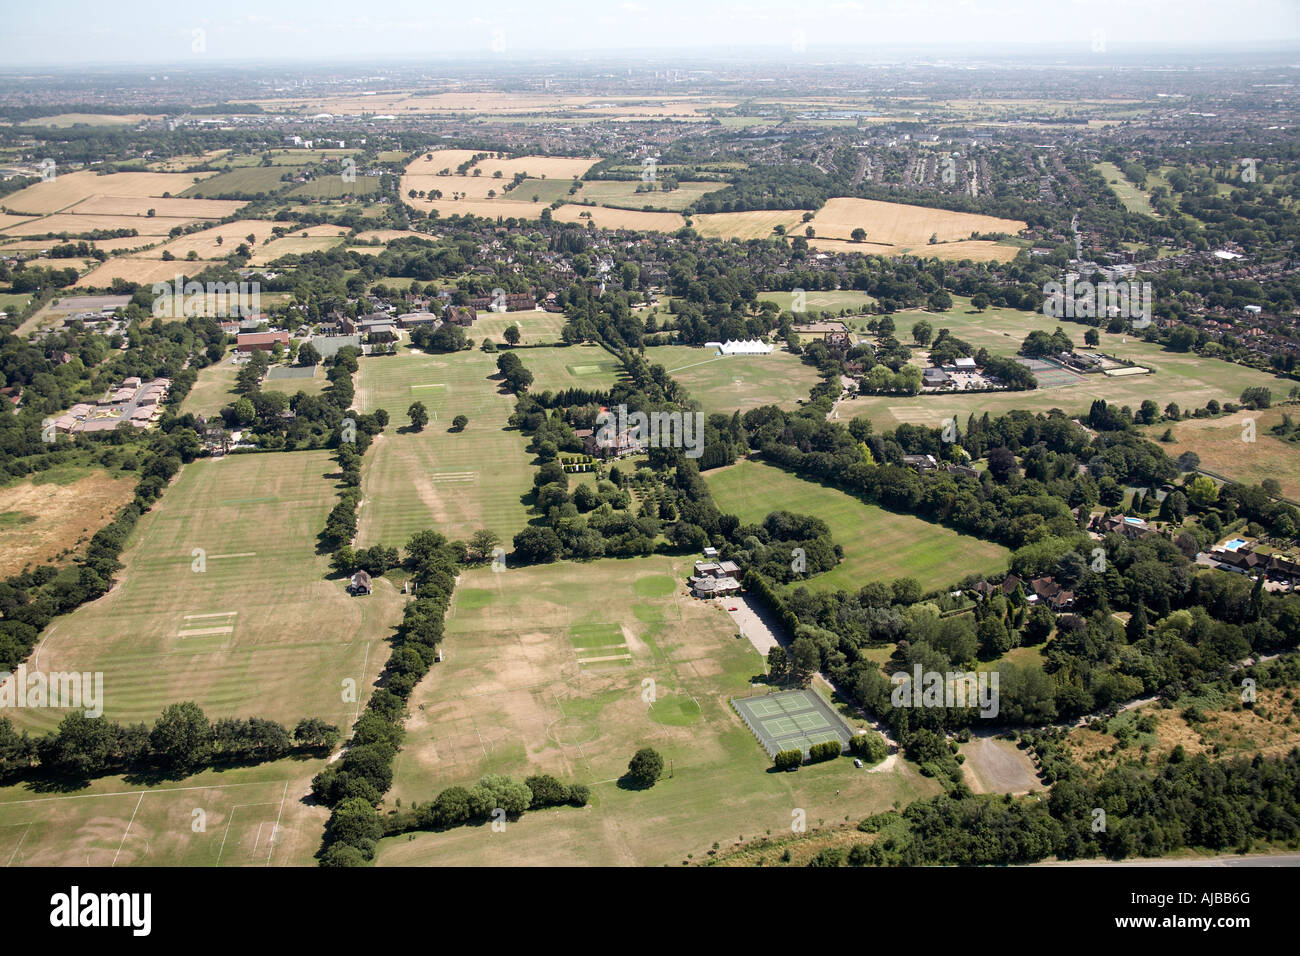 Vue aérienne au sud de Metropolitan Police Sports Club Sol, Chigwell, Essex, IG7 6BD England, UK. Oblique de haut niveau Banque D'Images